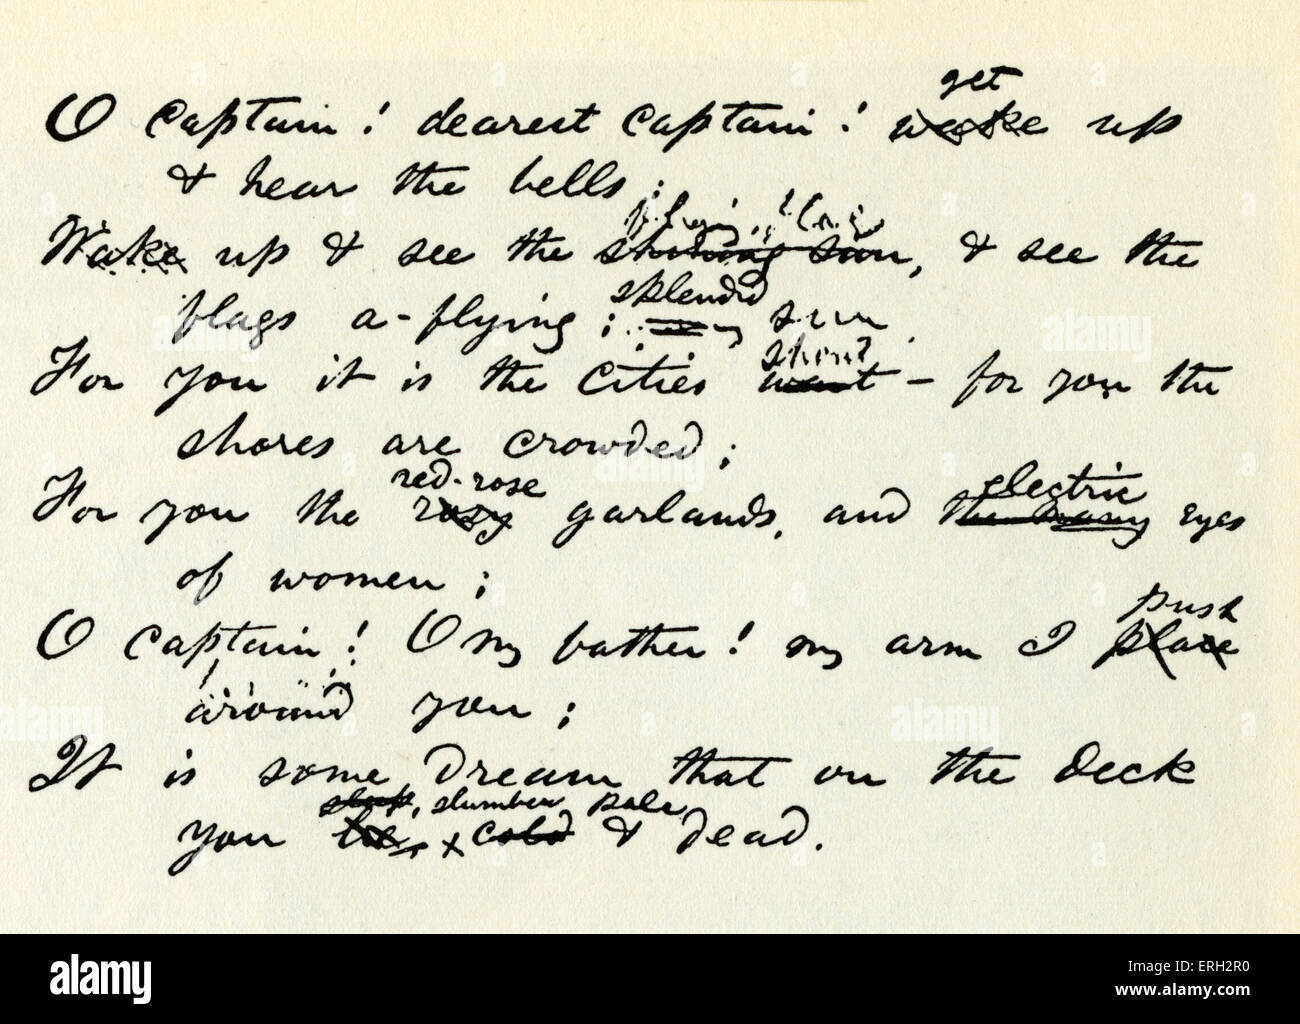 O Captain ! Mon Capitaine de lignes manuscrites des poème de Walt Whitman,  à la mémoire d'Abraham Lincoln. Poète et essayiste américain Photo Stock -  Alamy